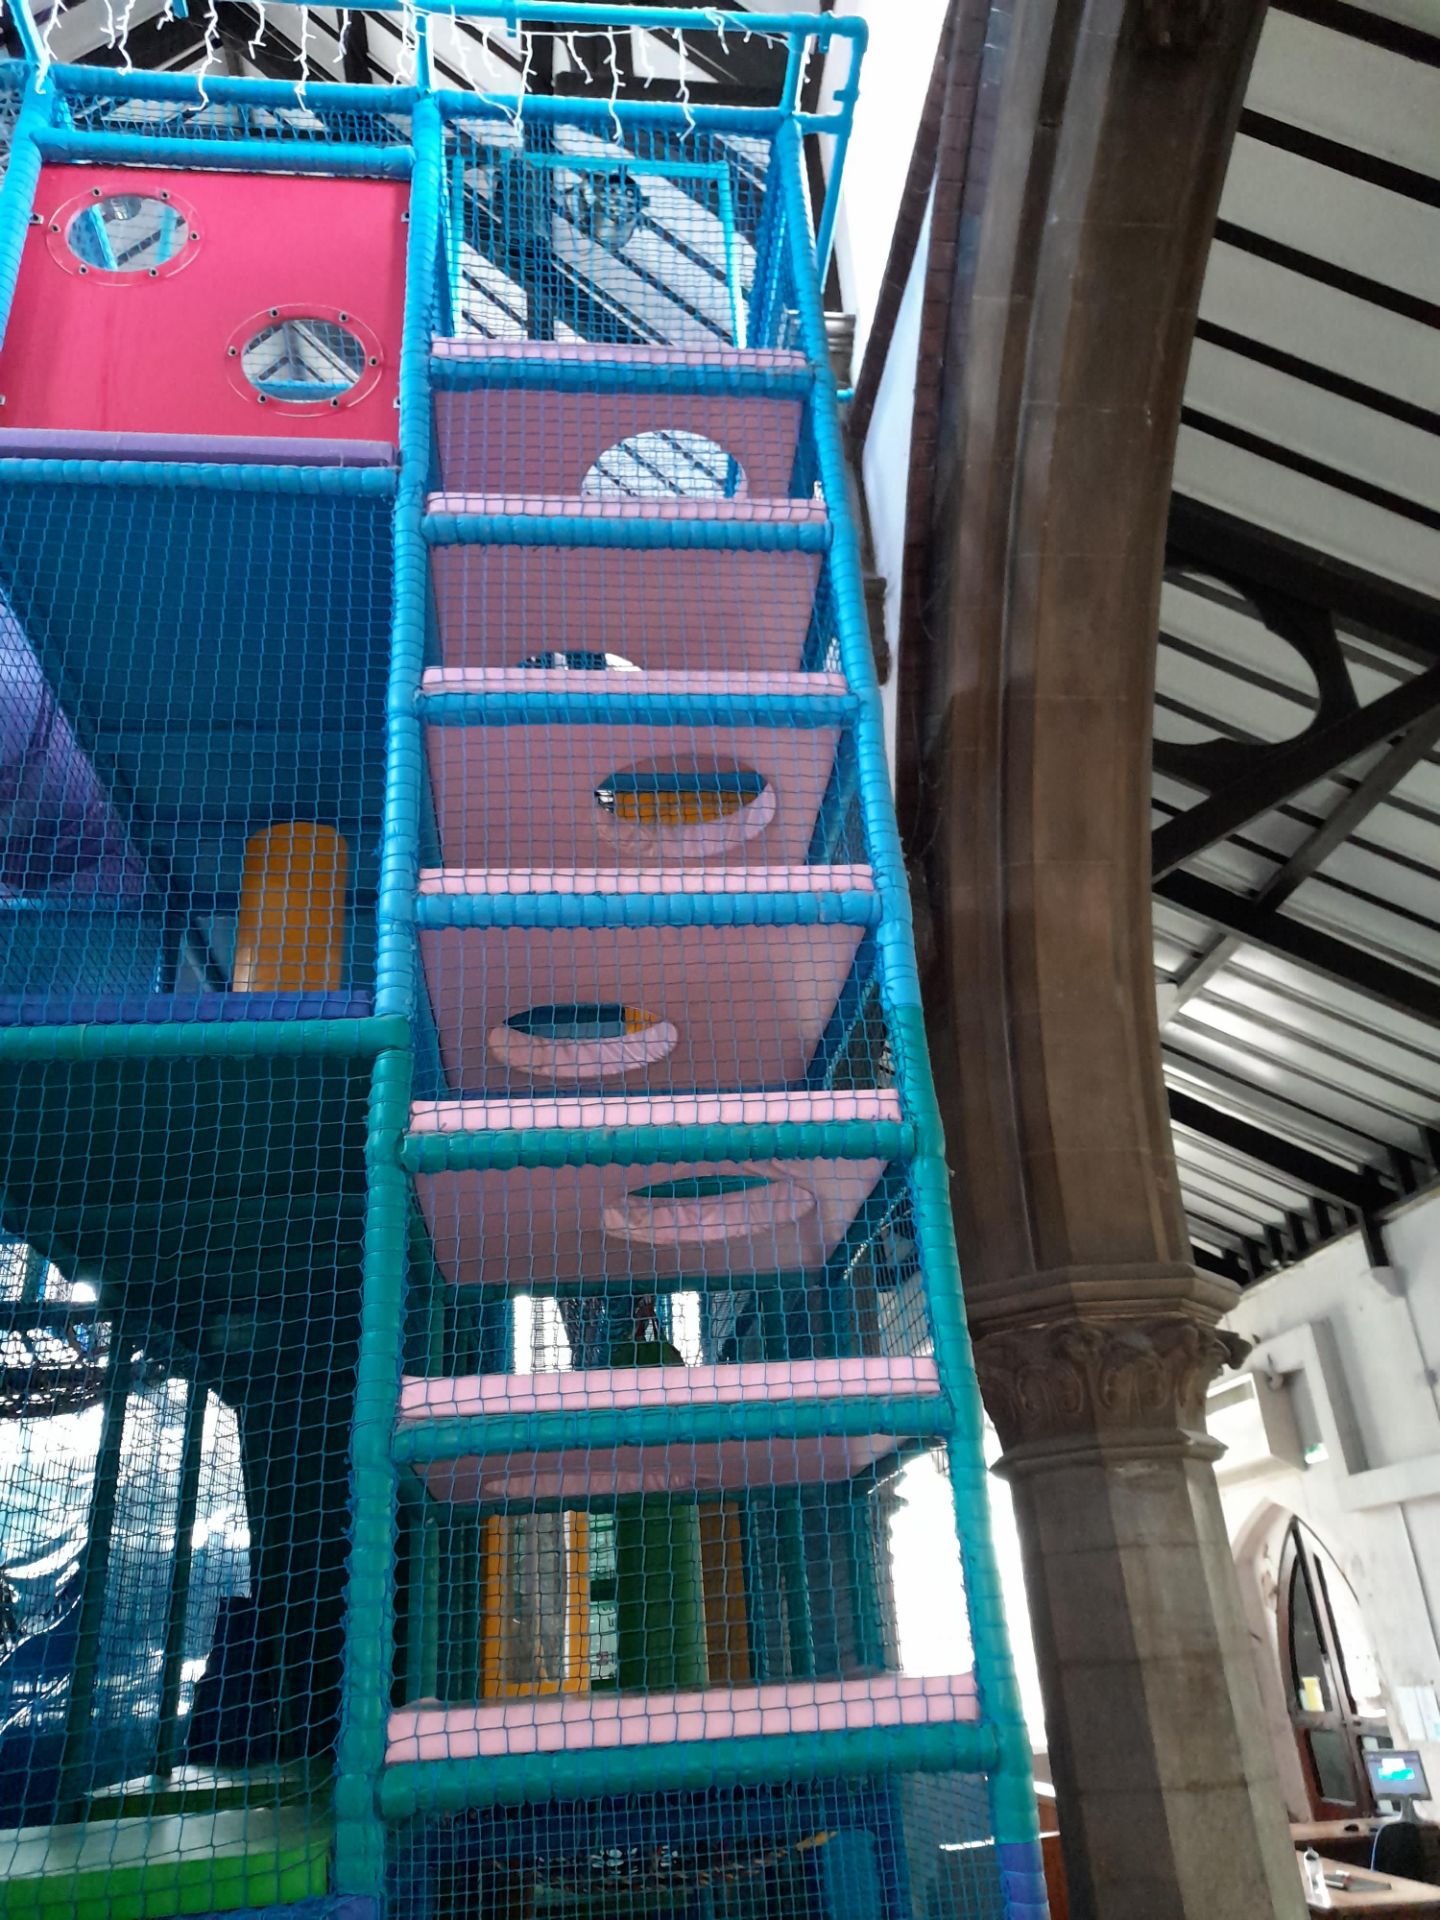 Bespoke 4-Tier Children’s Soft Play Structure, including 2 lane wave slide, spiral slide, deck - Image 2 of 6